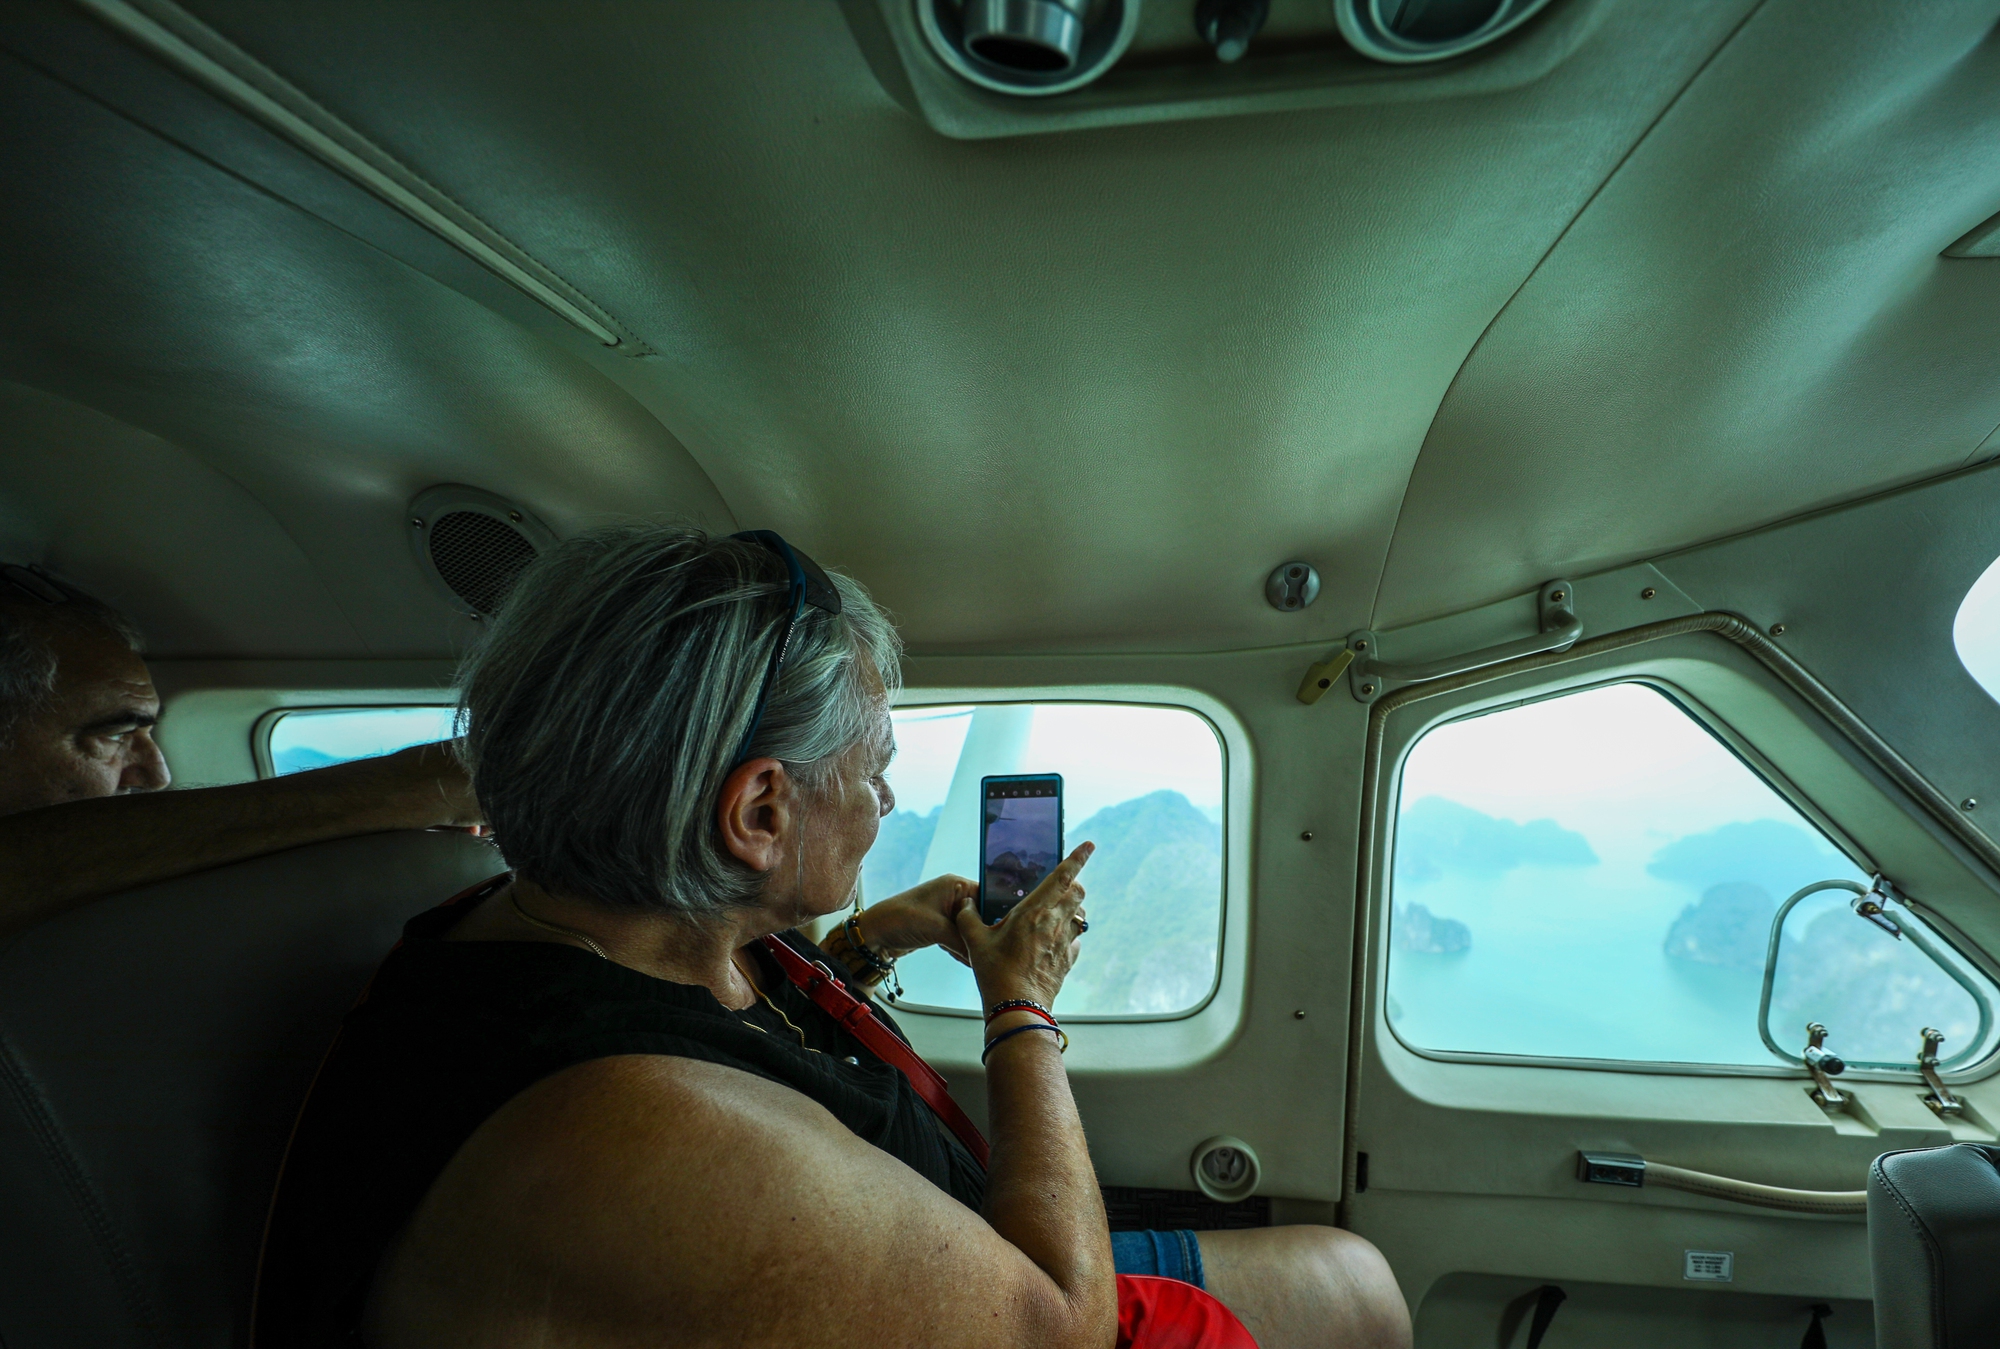 Ngắm Vịnh Hạ Long bằng thủy phi cơ: 25 phút mê mẩn trước cảnh đảo lớn đảo nhỏ lấp ló, trùng điệp dãy núi đá vôi, mặt biển xanh rì sóng vỗ - Ảnh 5.